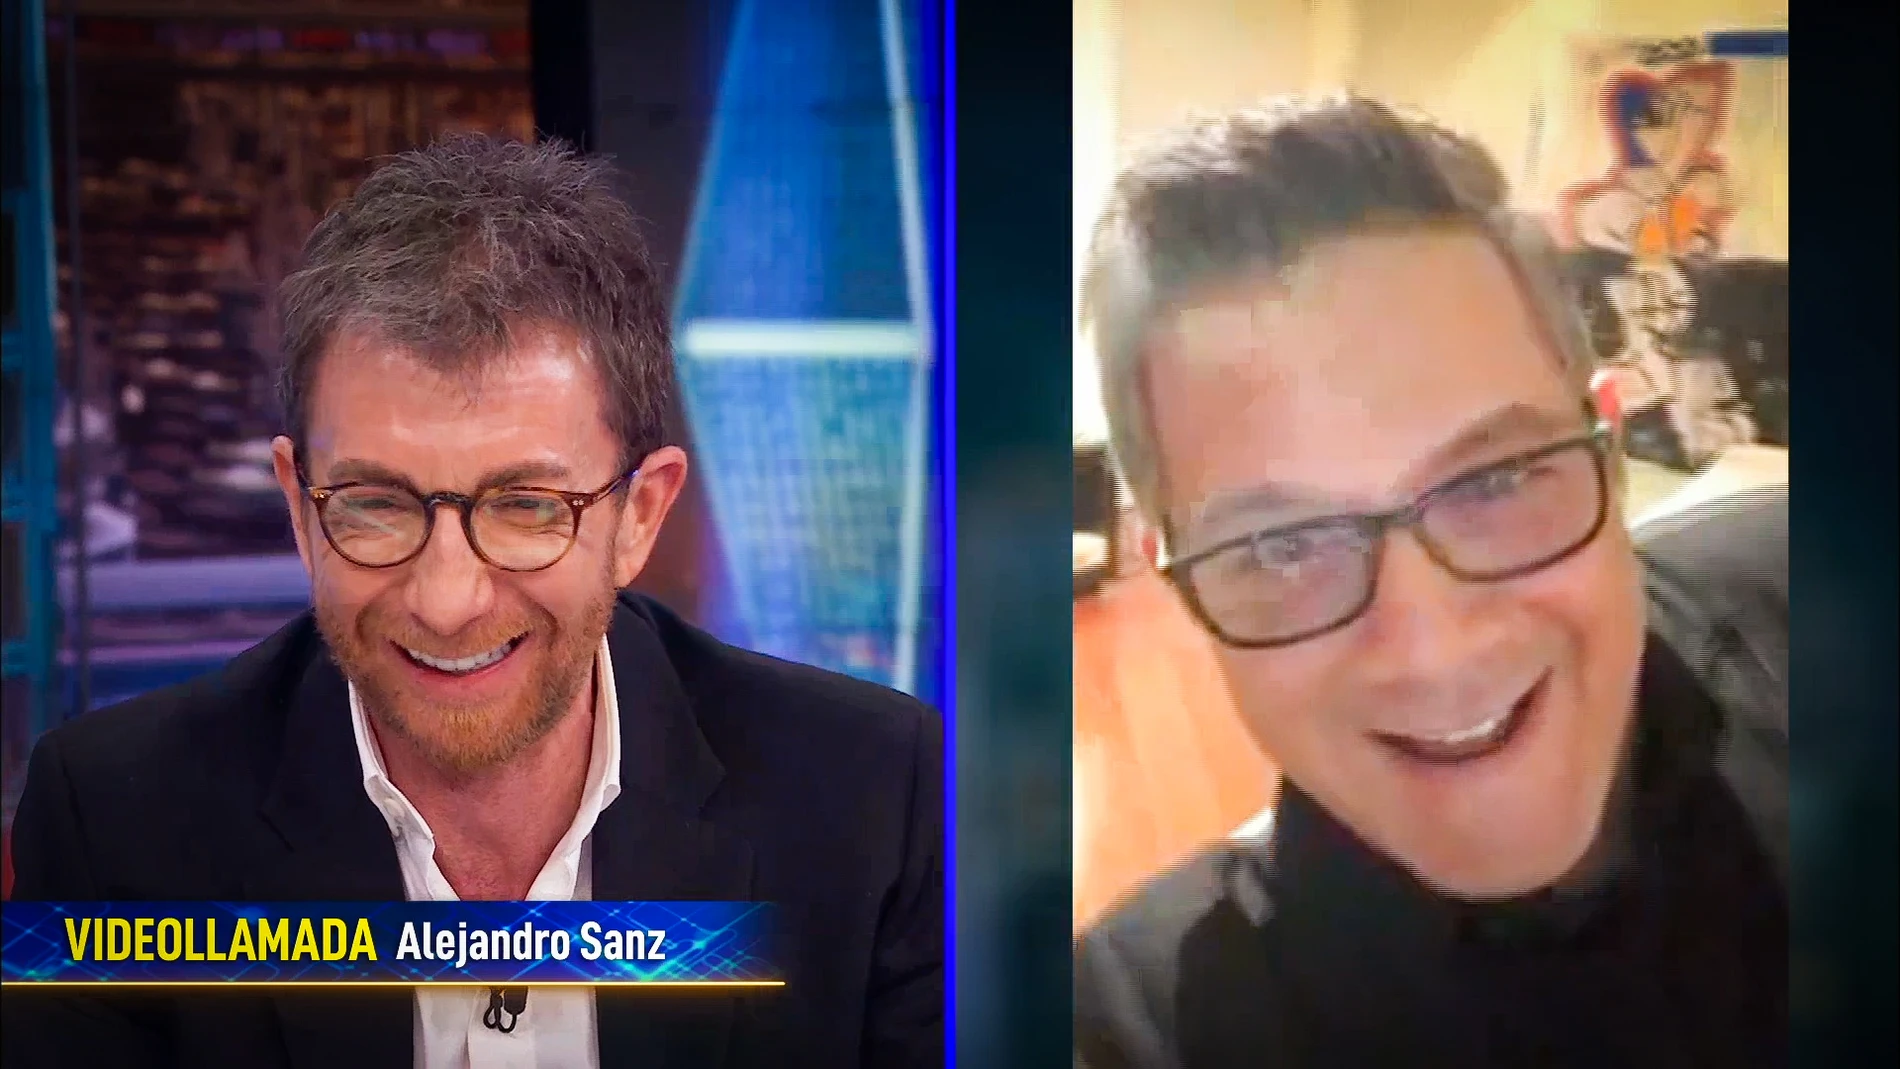 El emotivo momento entre Pablo Motos y Alejandro Sanz al recordar a Paco de Lucía